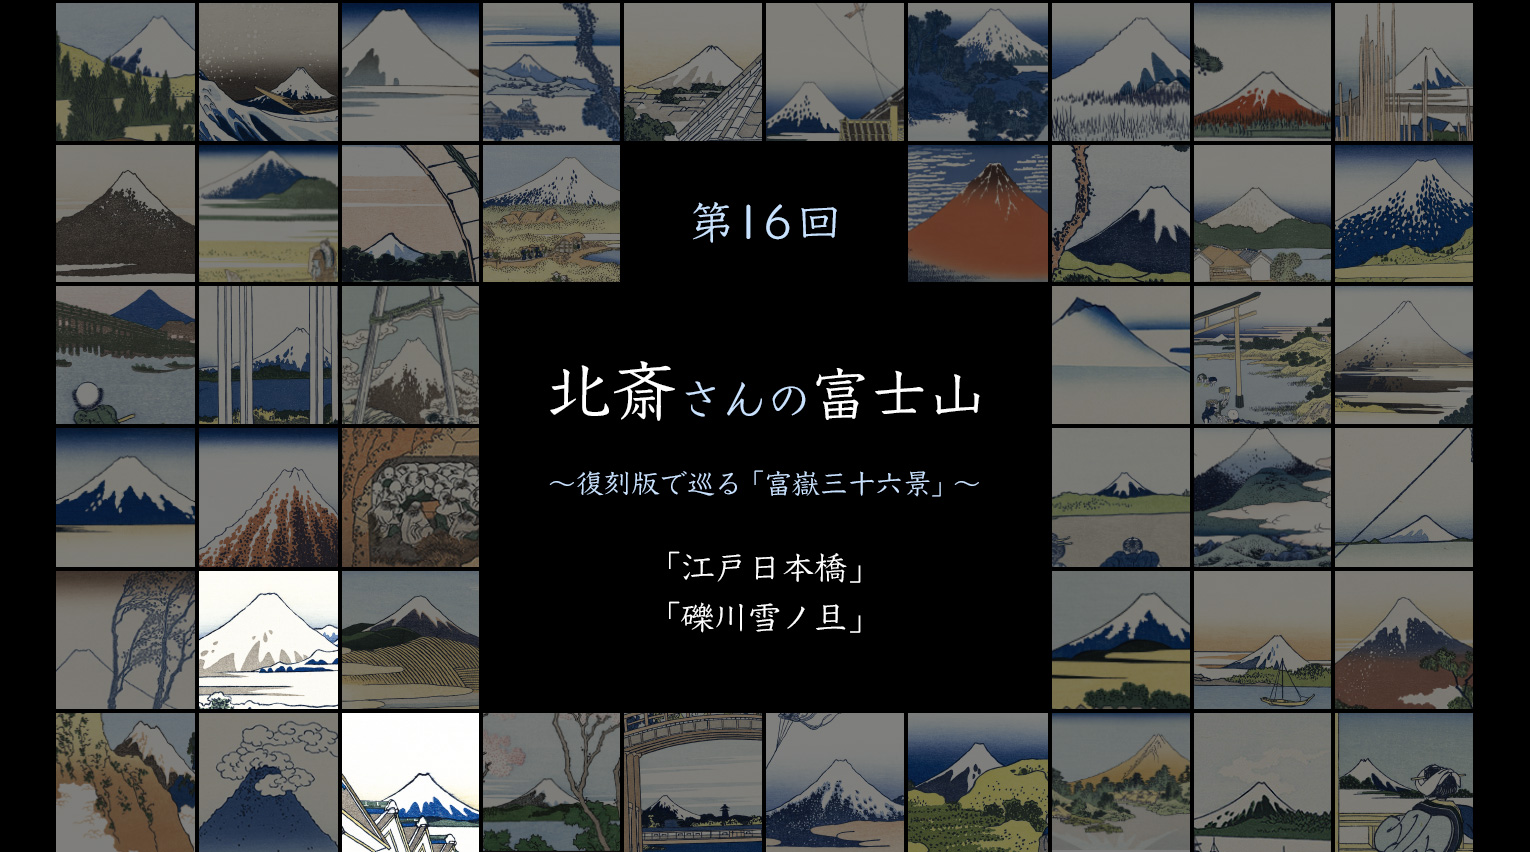 北斎さんの富士山 〜復刻版で見る「富嶽三十六景」〜 (16)【PR】